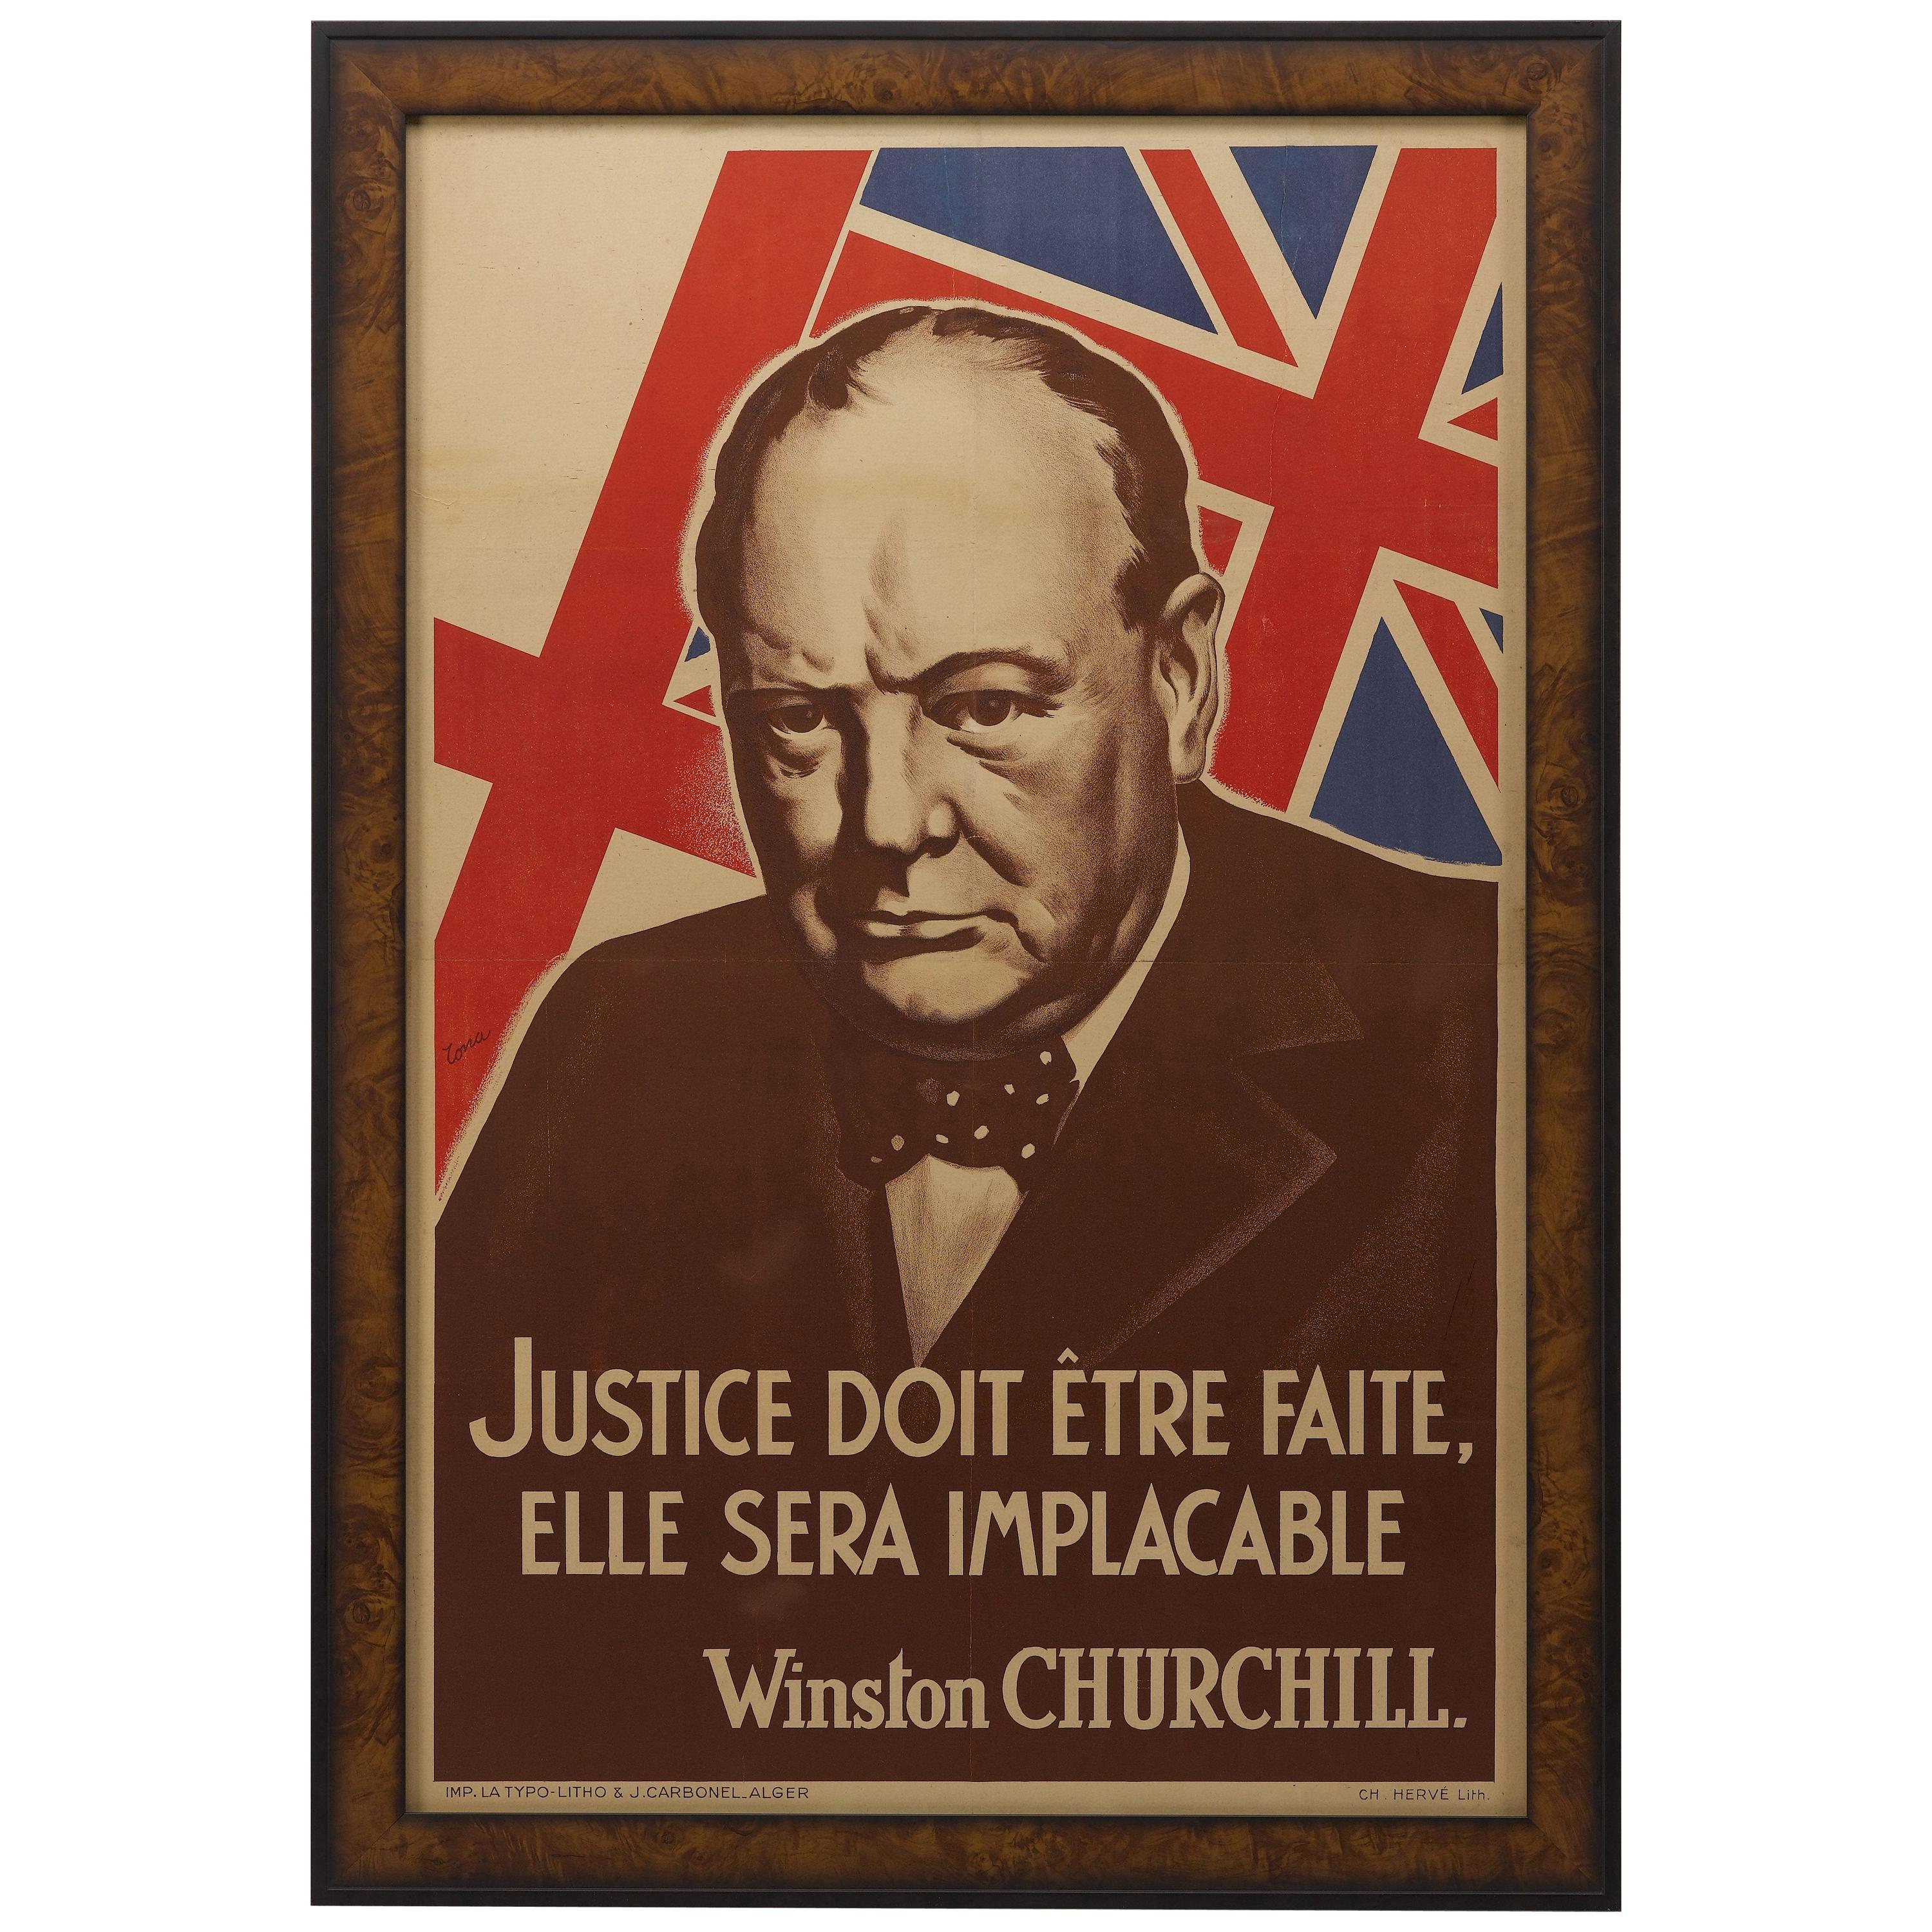 Winston Churchill World War II Patriotic Poster, 1942